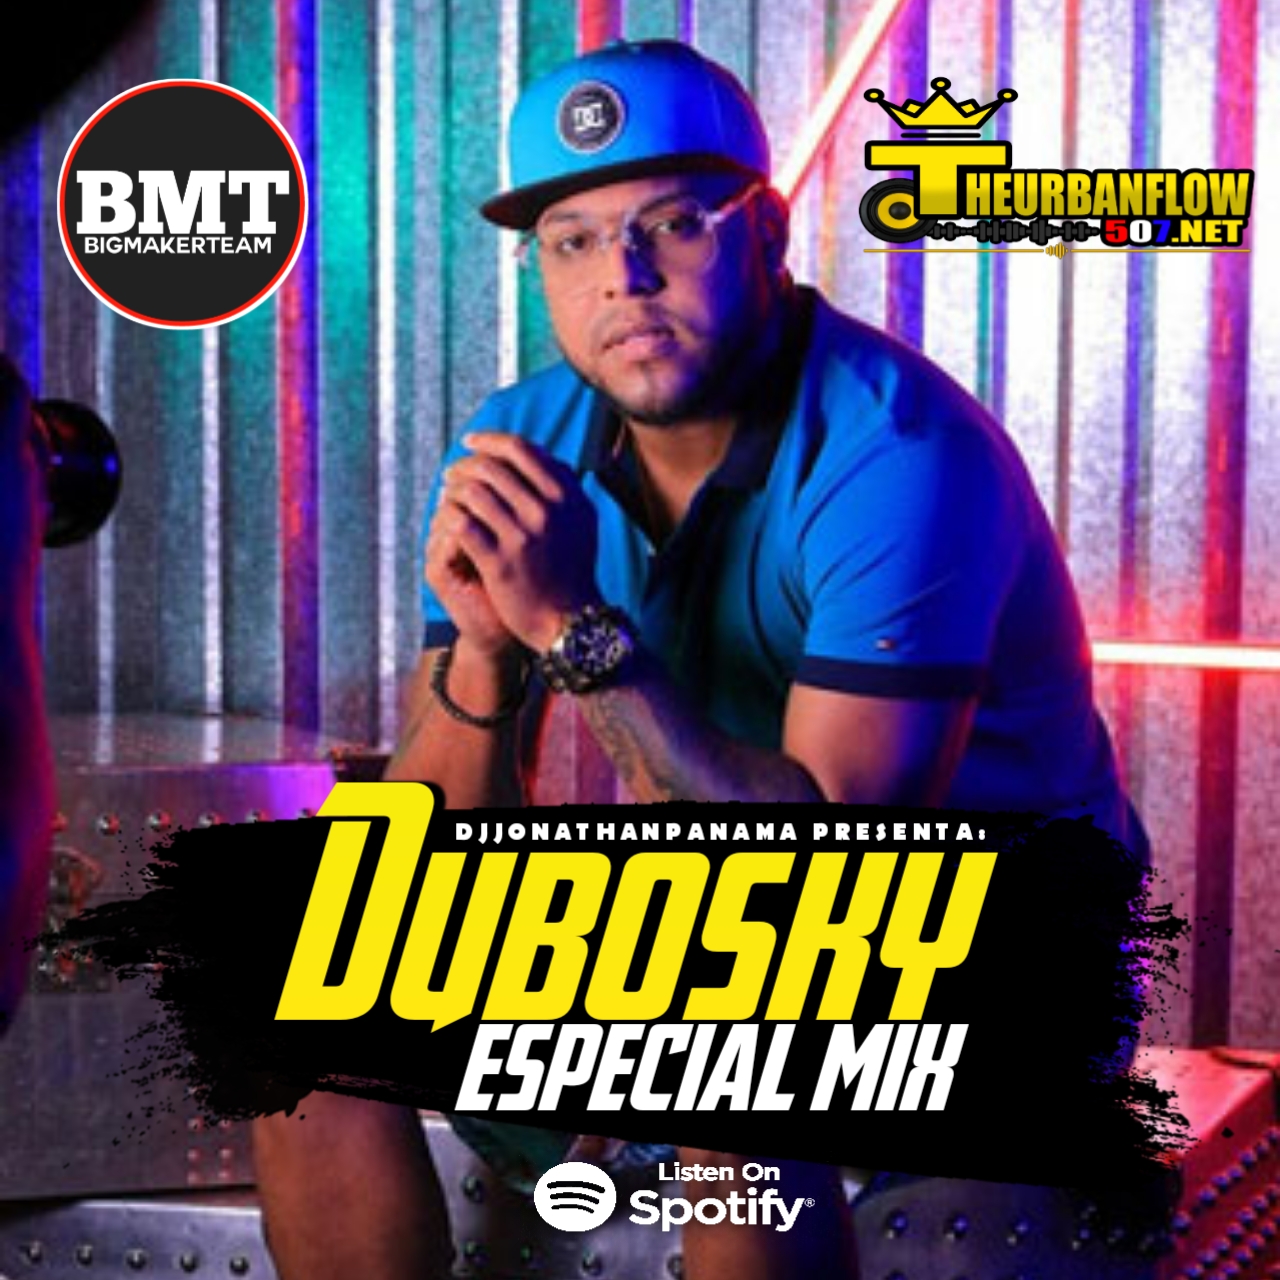 Dubosky EspecialMix 2020 - @djjonathanpanama